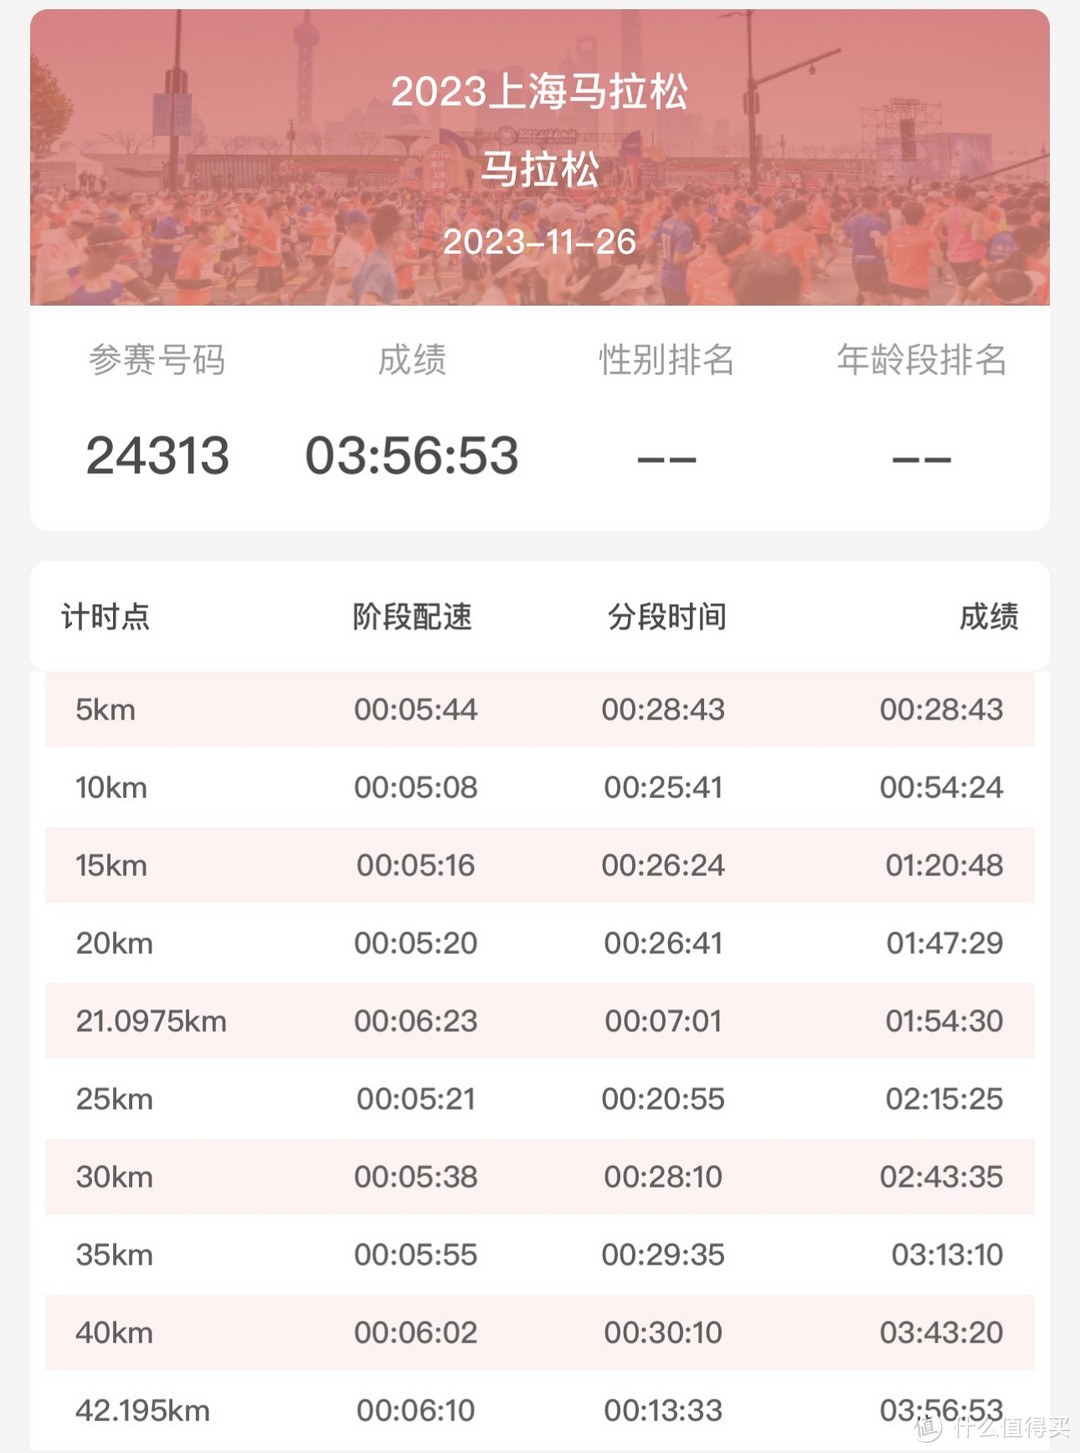 意料之外的PB—2023上海马拉松之行前前后后的琐碎记录和赛事体验